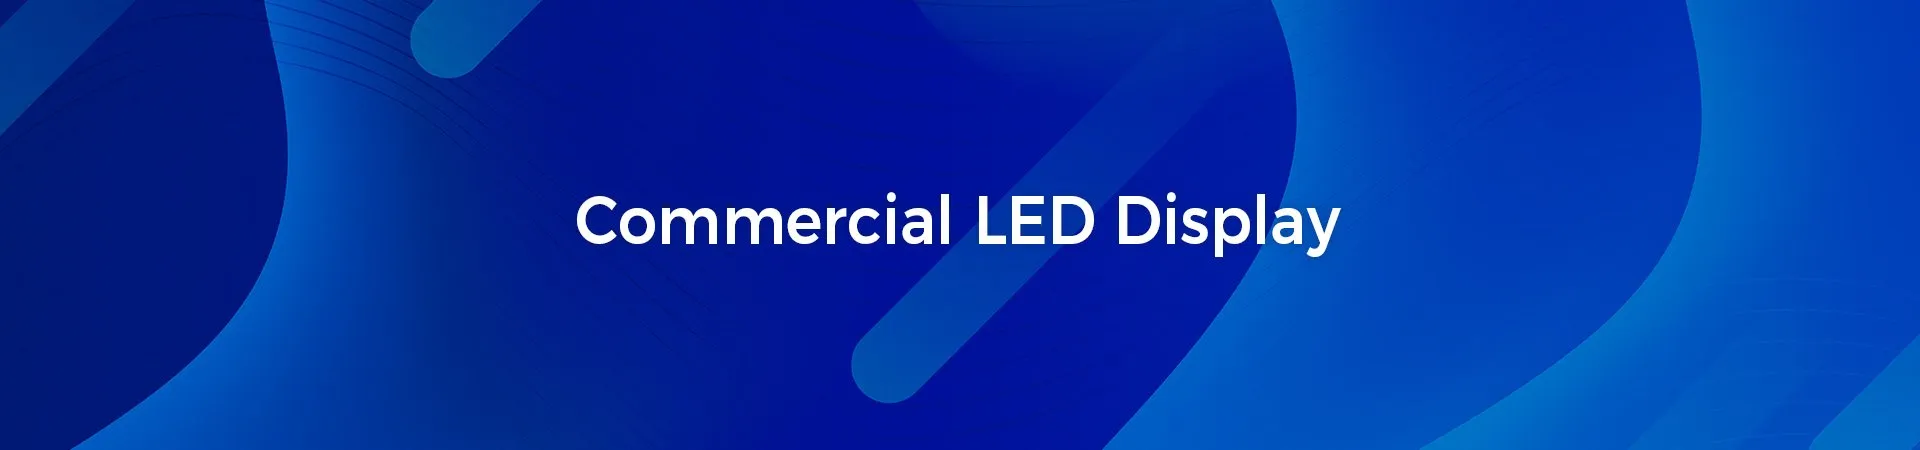 Kommerzielle LED-Anzeige